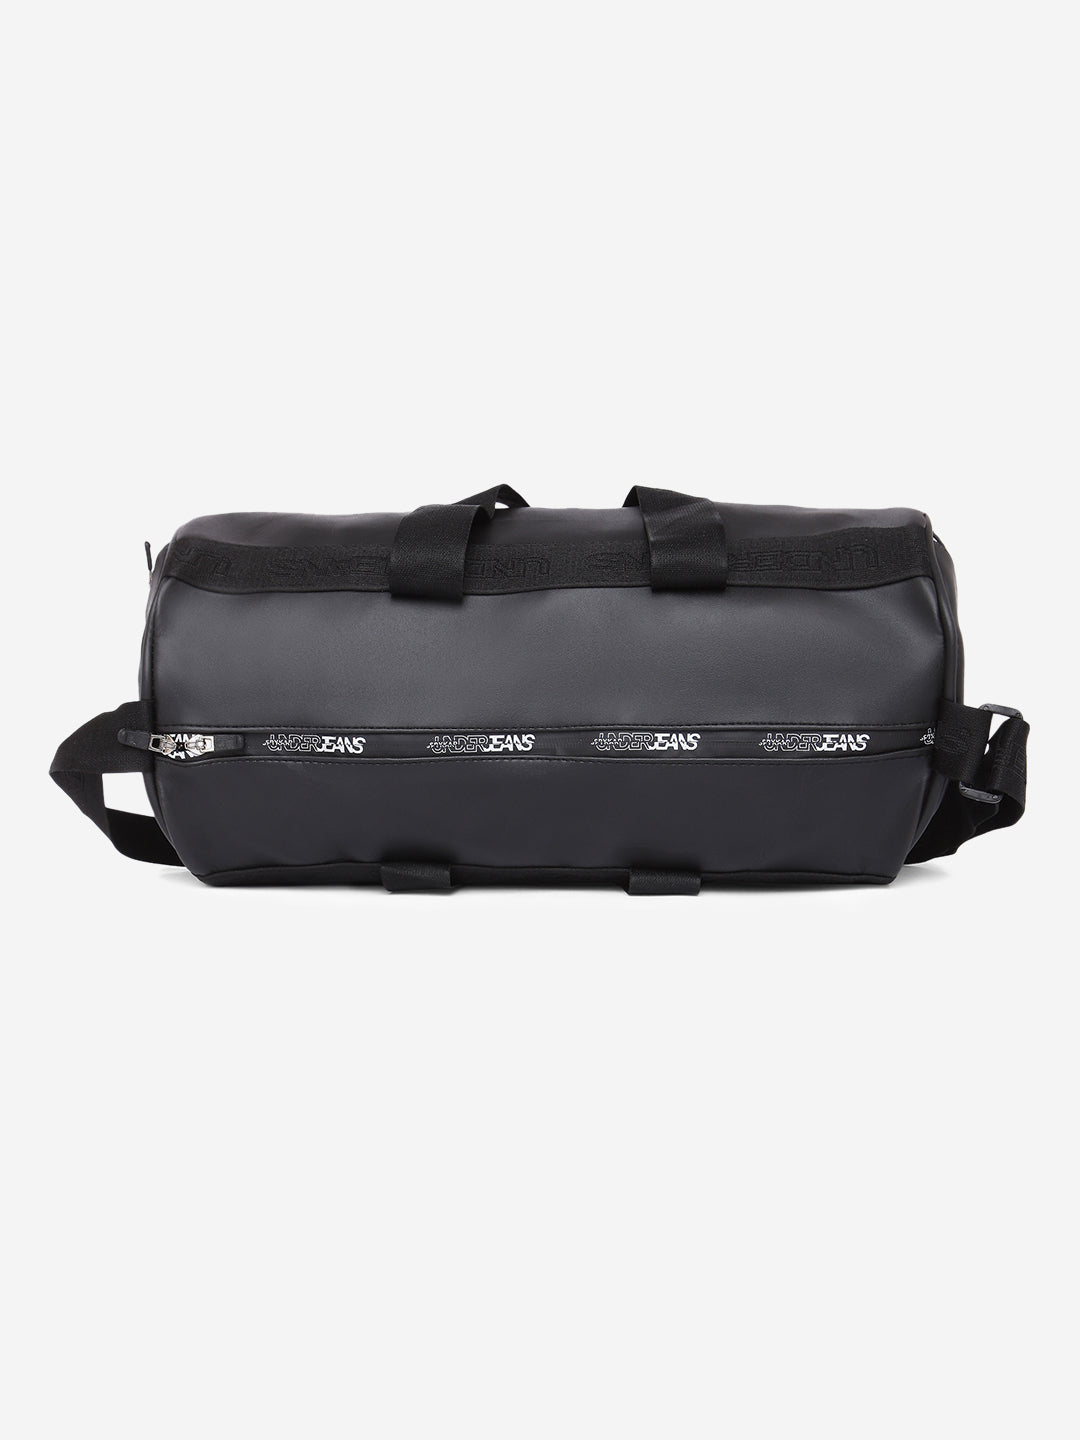 Buy Spykar Grey Multipurpose & Gym Duffle Bag at Amazon.in